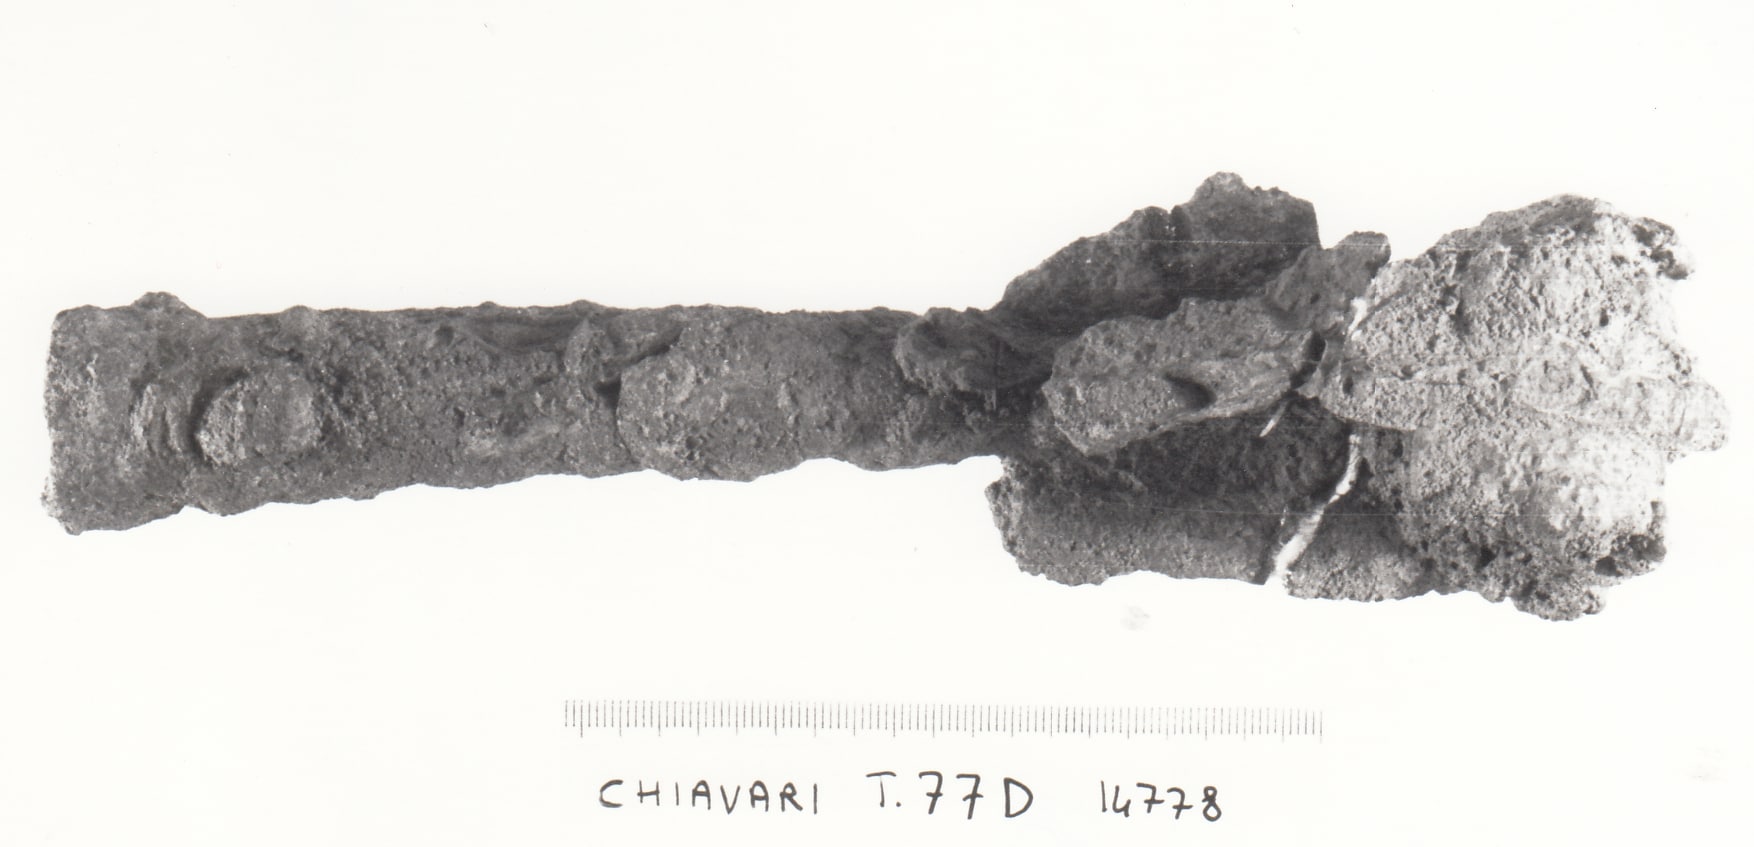 punta di lancia - cultura ligure della prima età del Ferro (VII a.C)